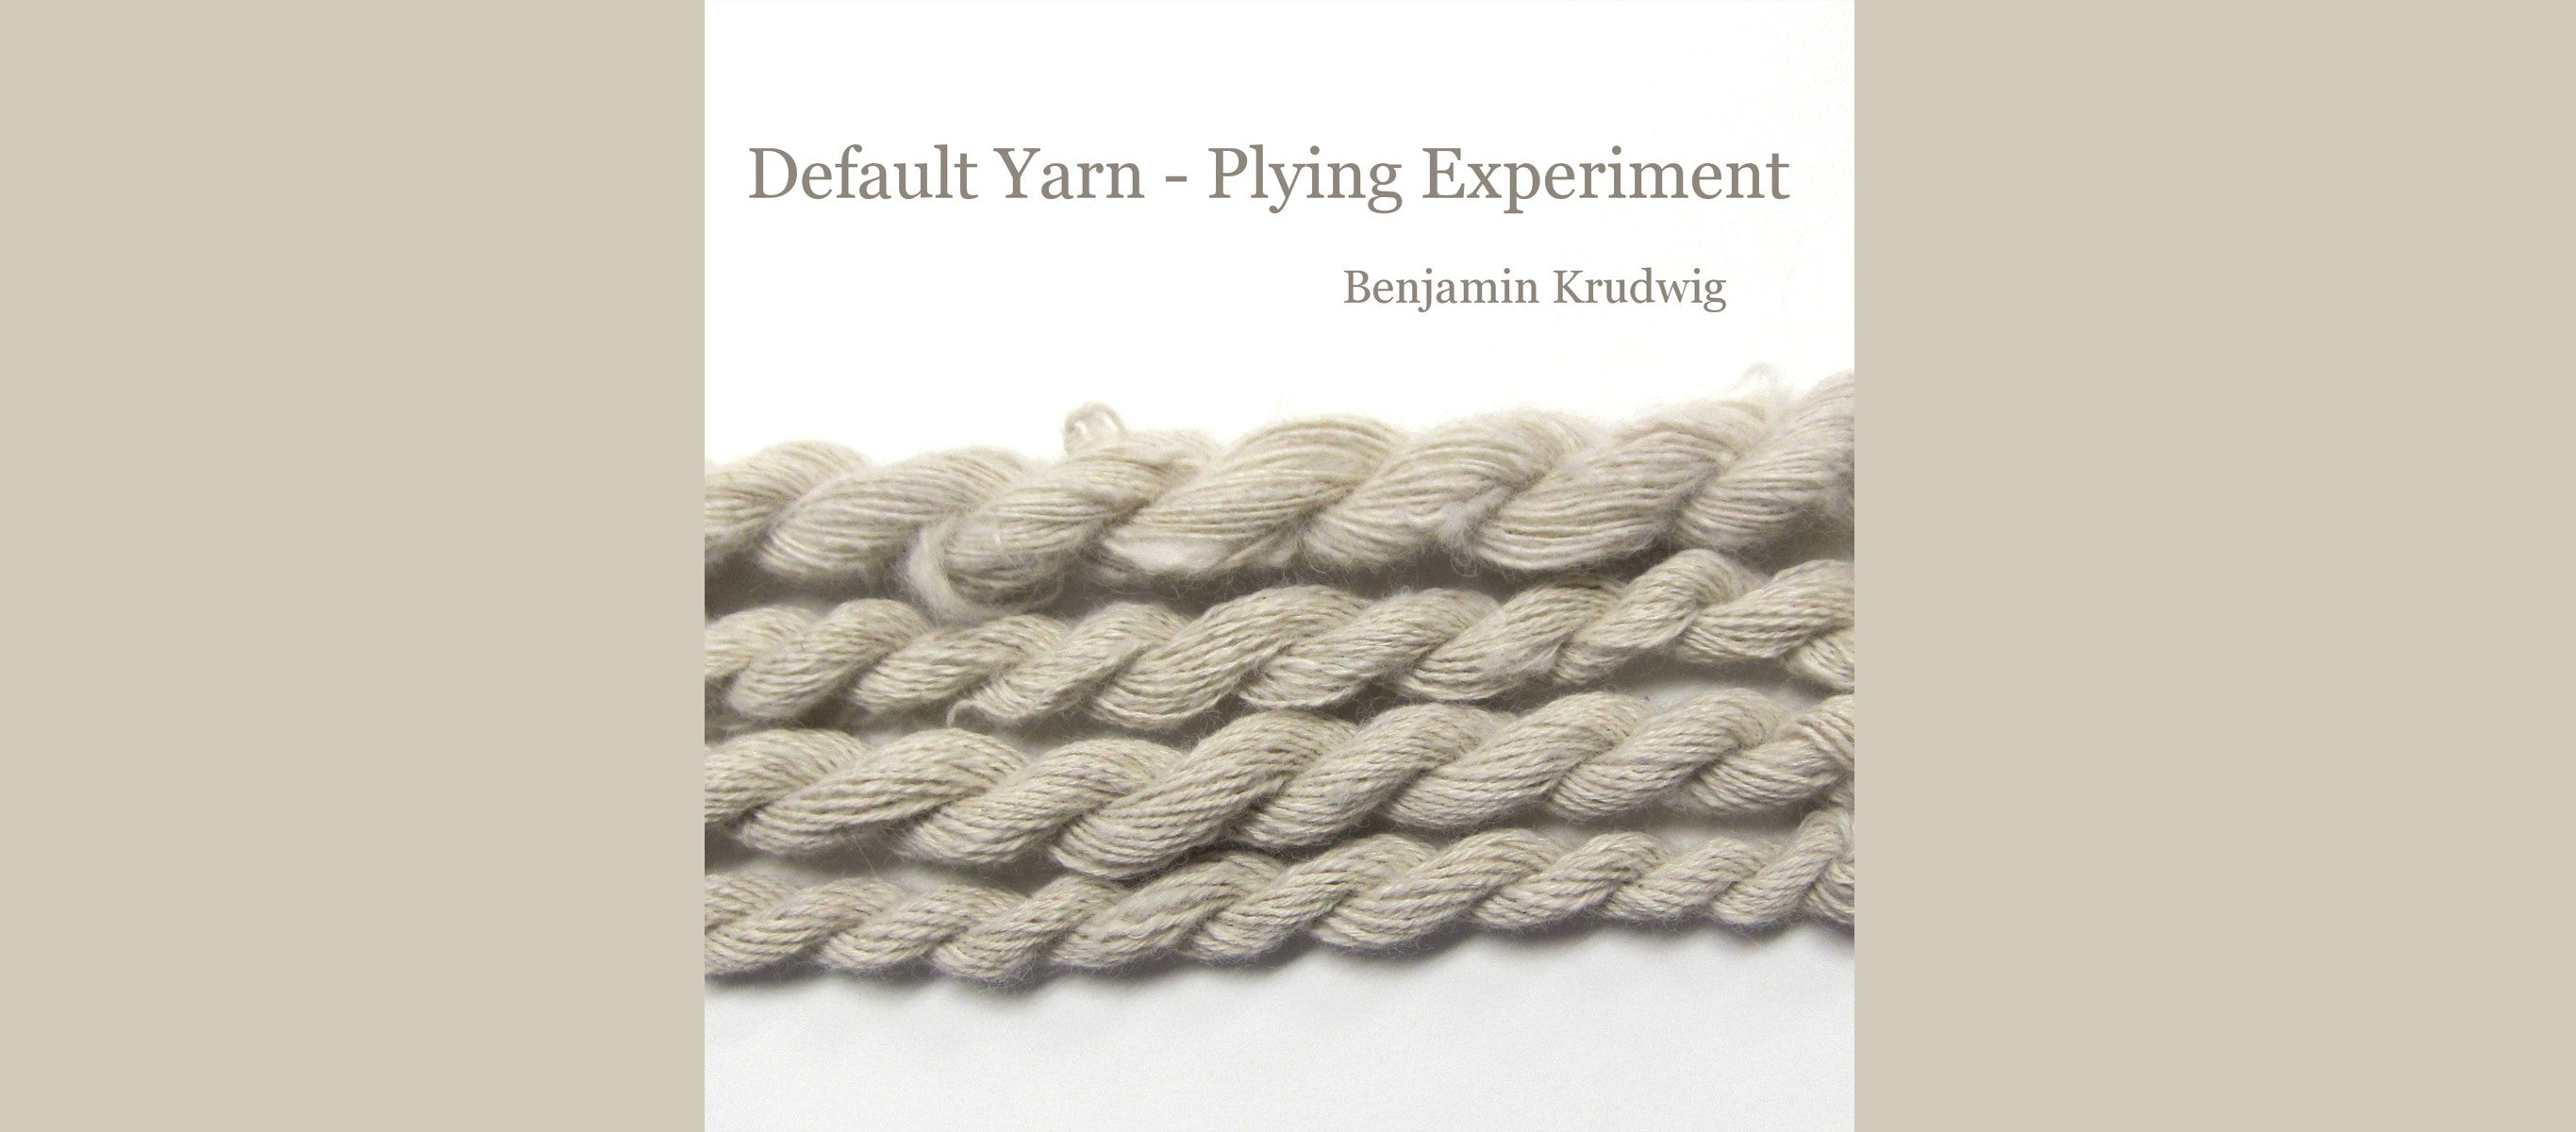 Default Yarn Challenge - Benjamin's Plying Experiment